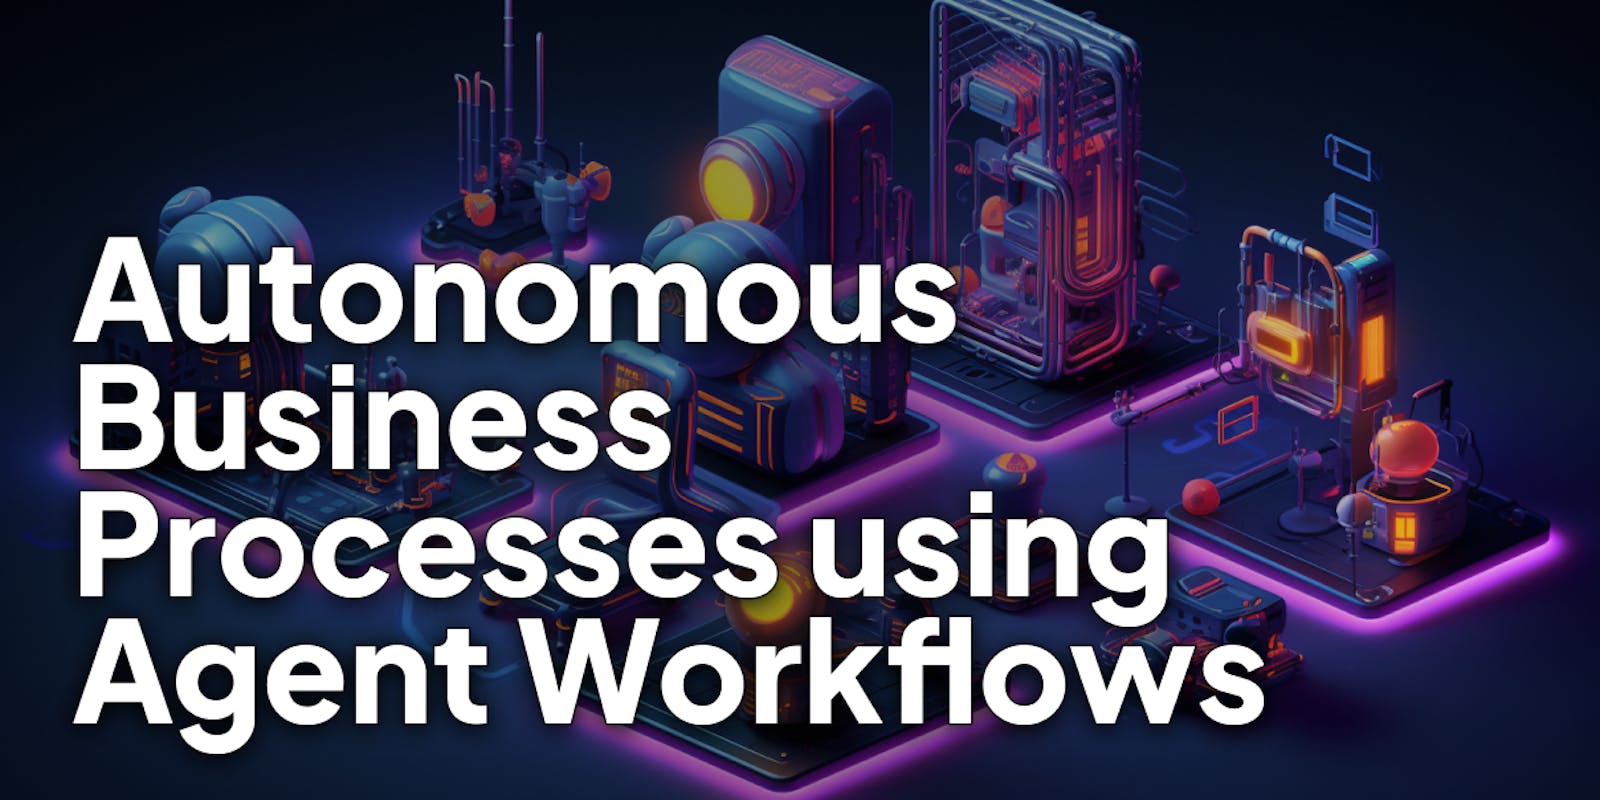 Building Autonomous Business Processes using AI Agent Workflows